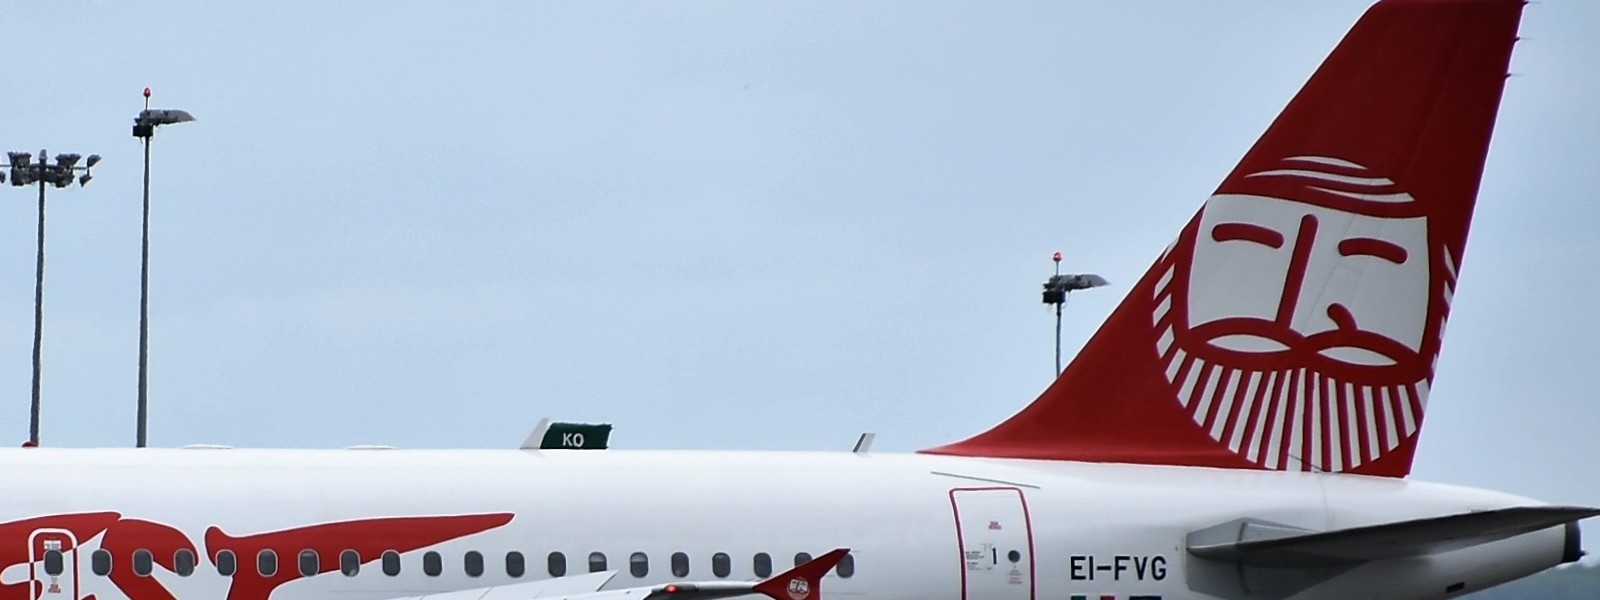 Ernest Airlines, Uiltrasporti: azionisti e management fare subito propria parte. Istituzioni intervengano